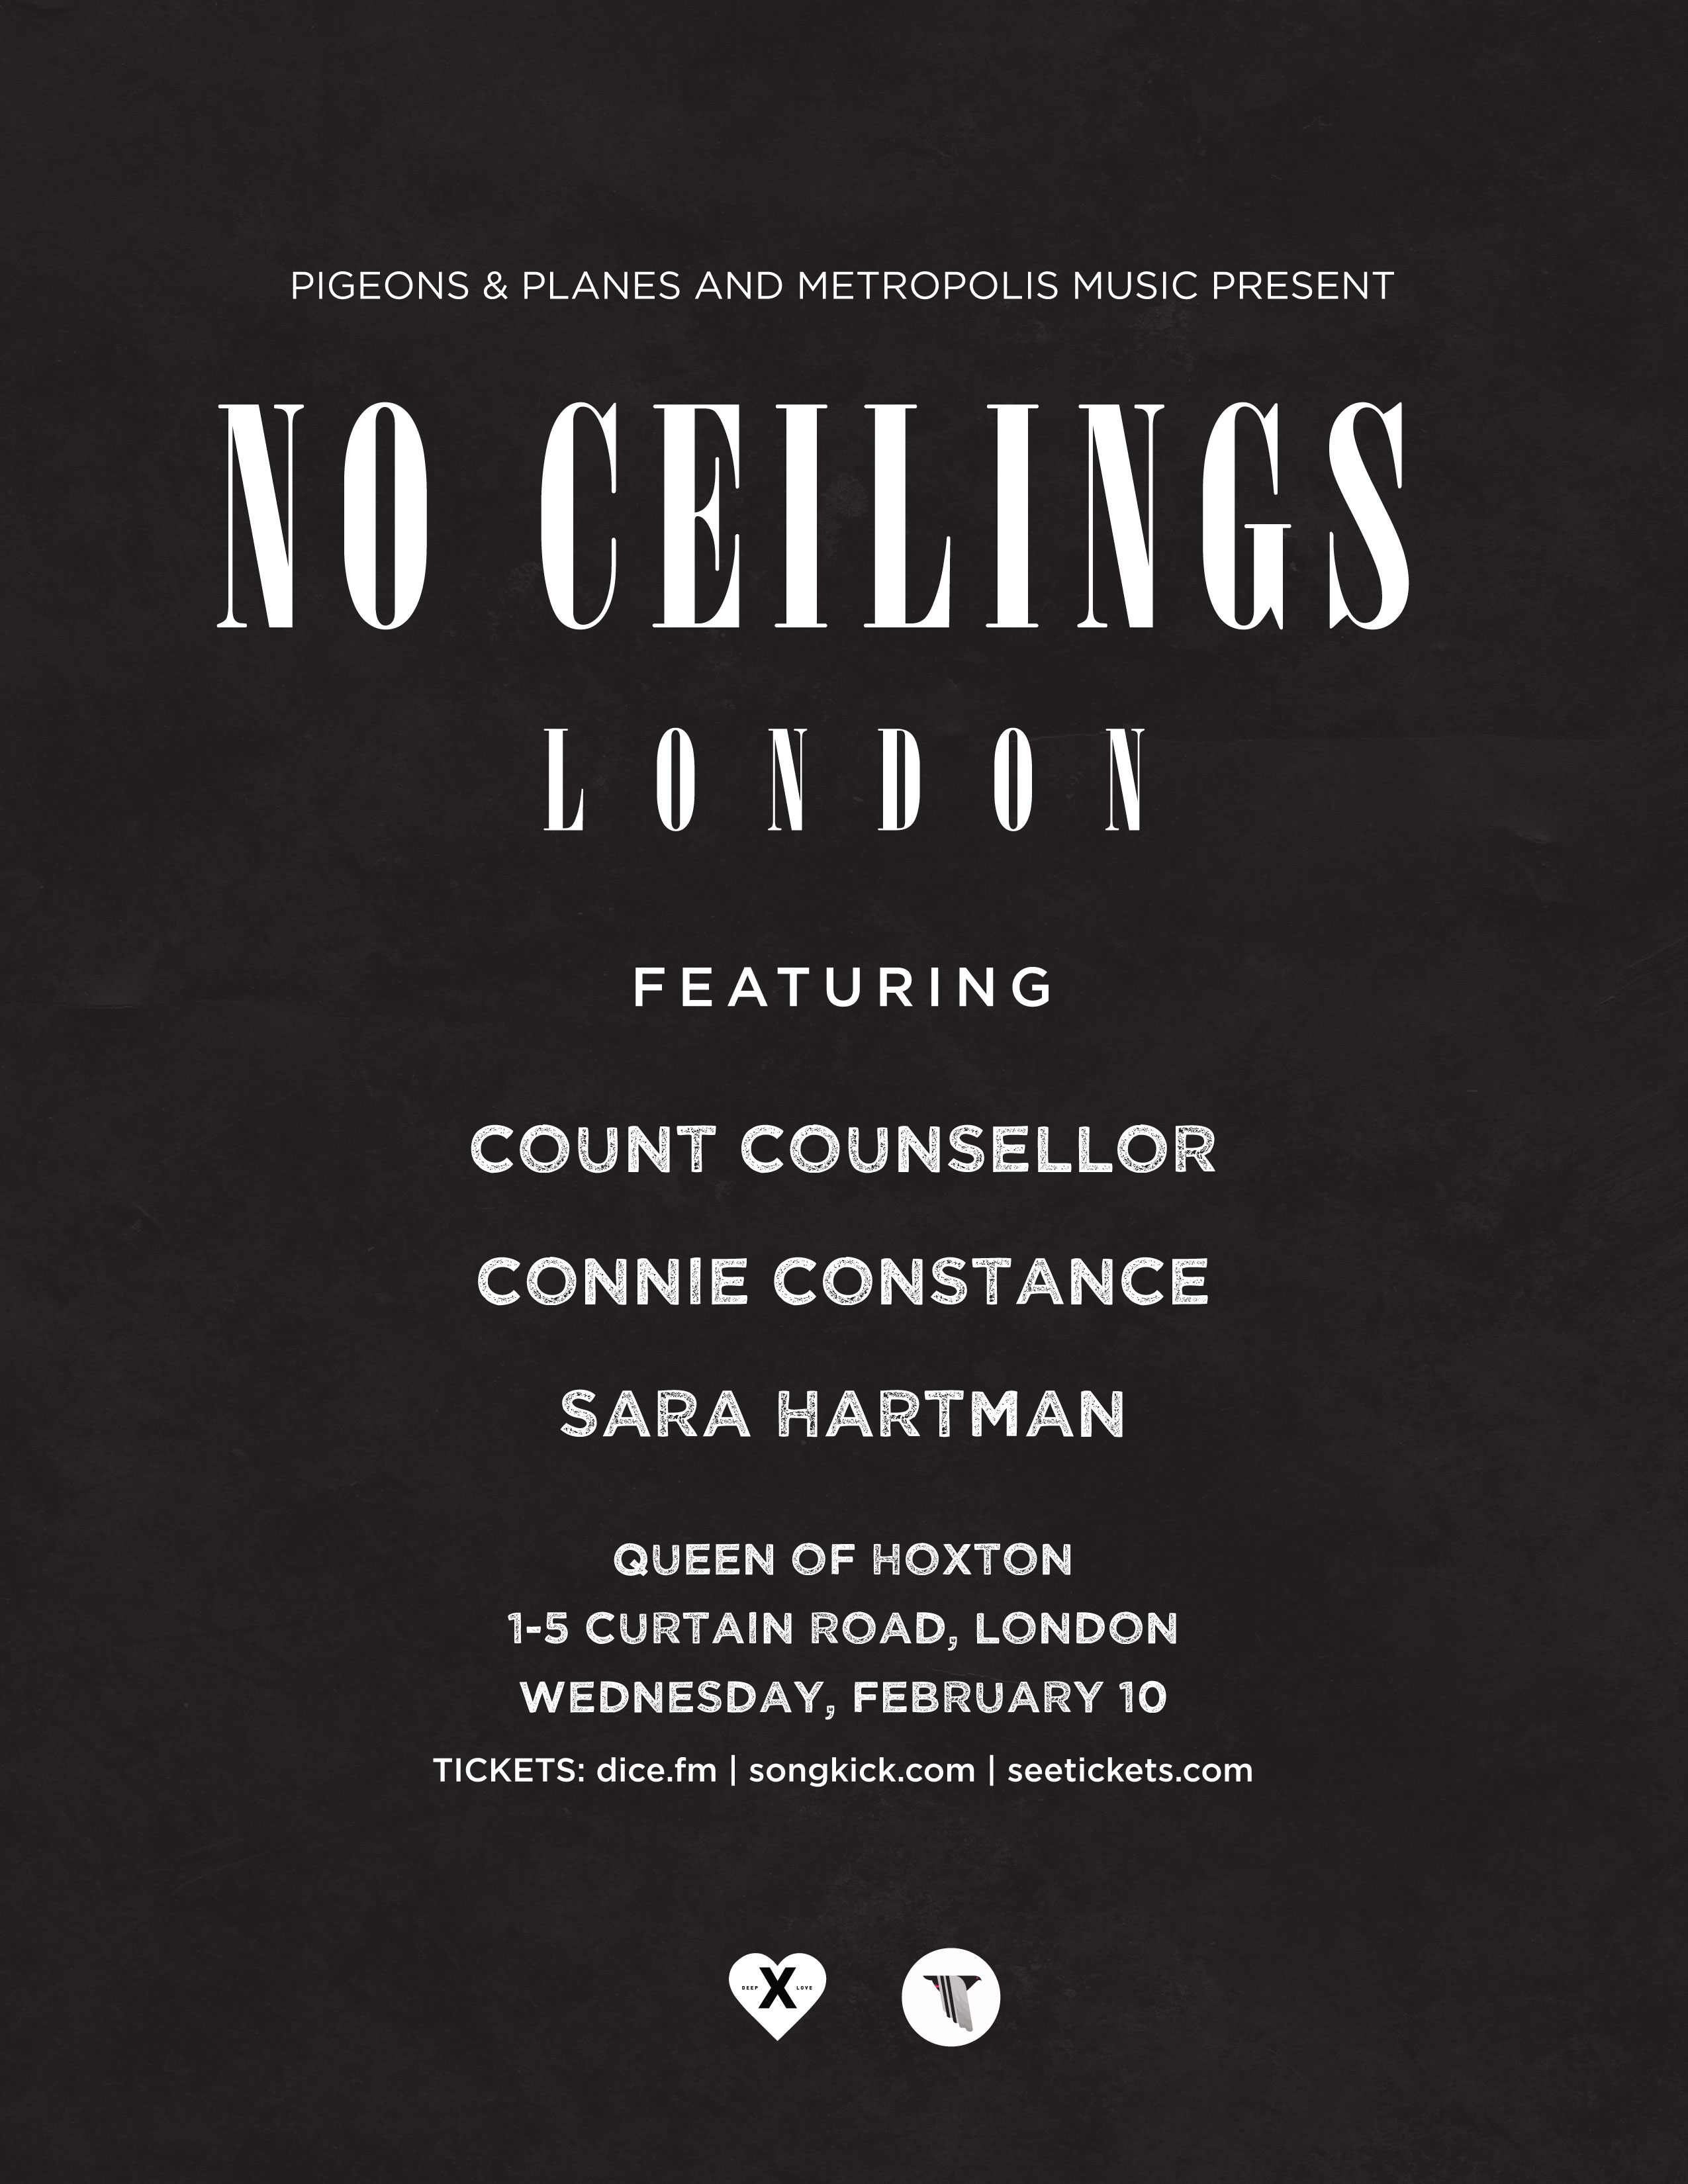 NoCeilings-London-feb